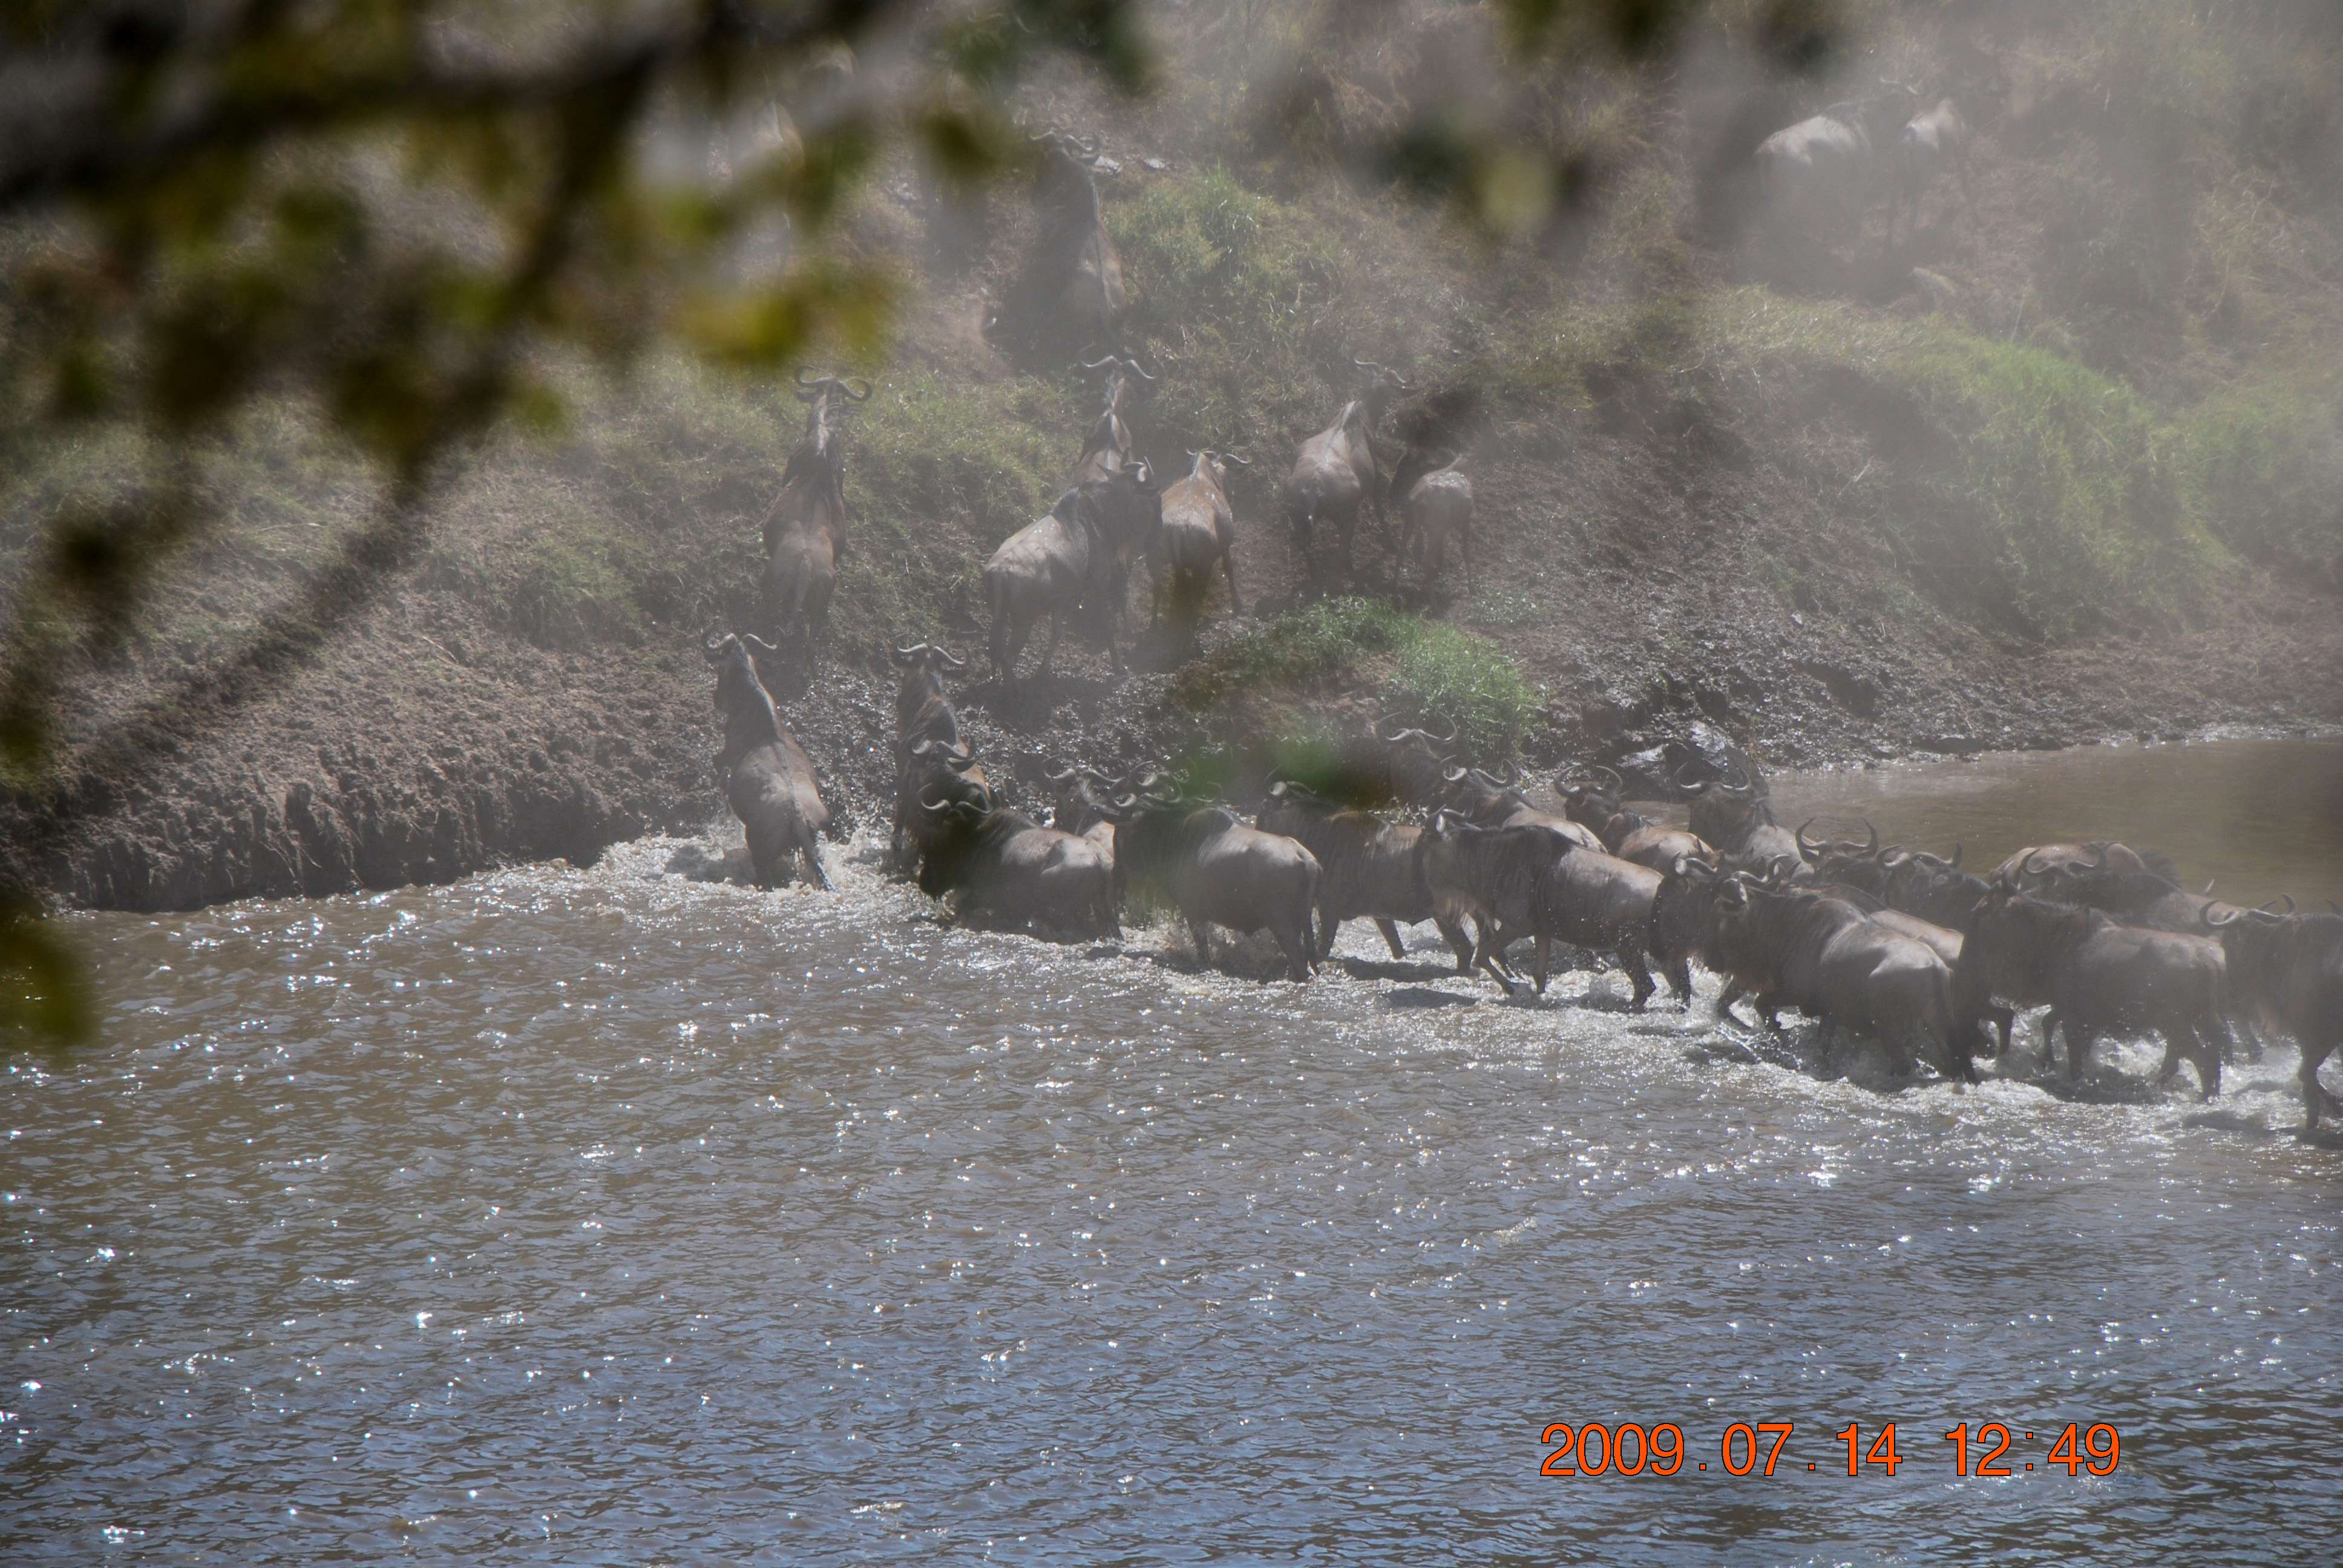 Kenia una experiencia inolvidable - Blogs de Kenia - El cruce del río Mara. (8)